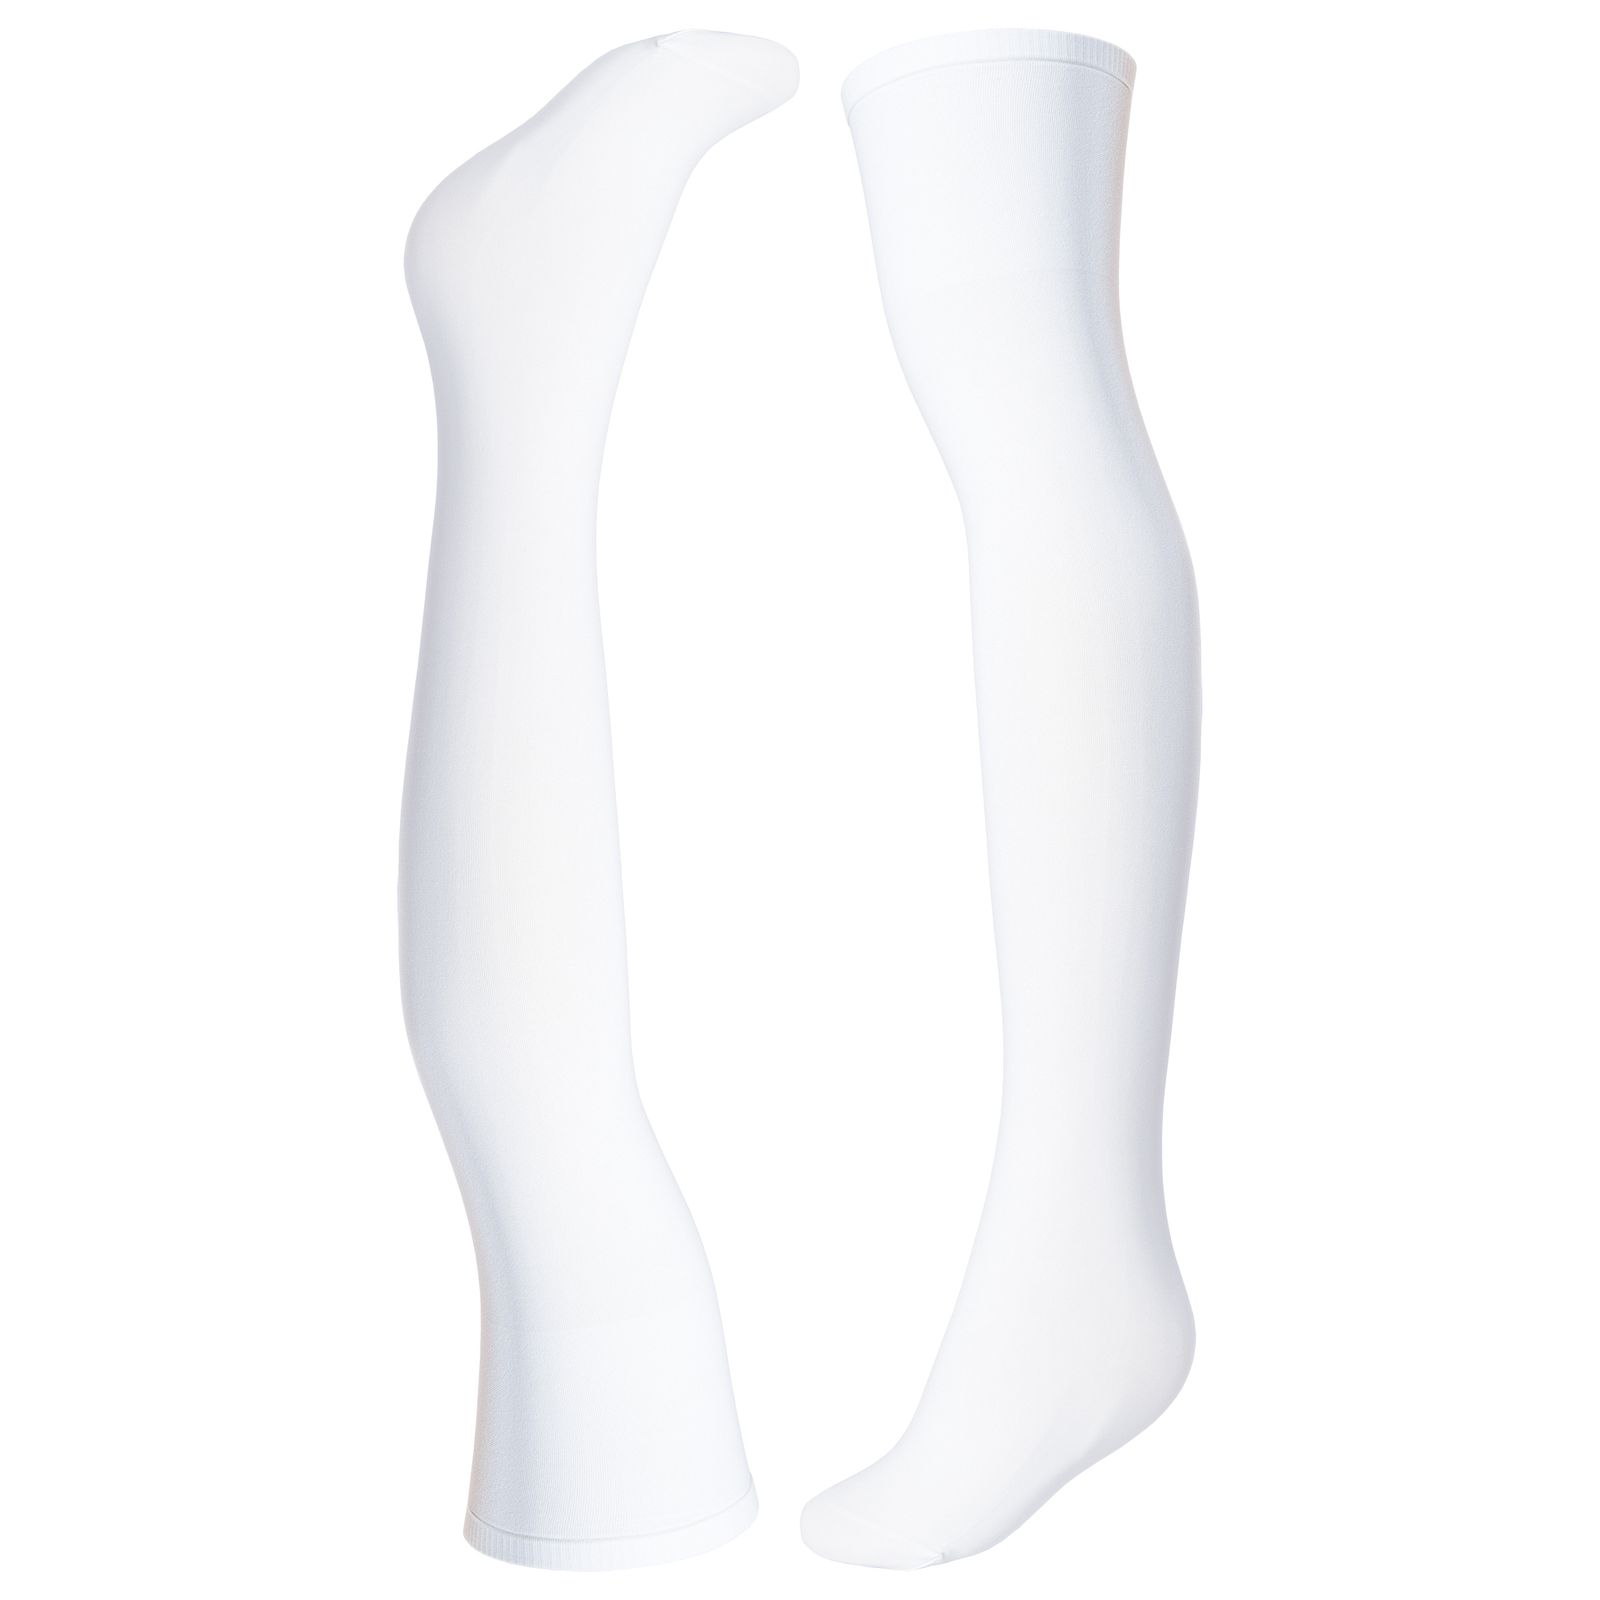 جوراب زنانه پریزن مدل بالای زانو DEN70-S رنگ سفید -  - 1